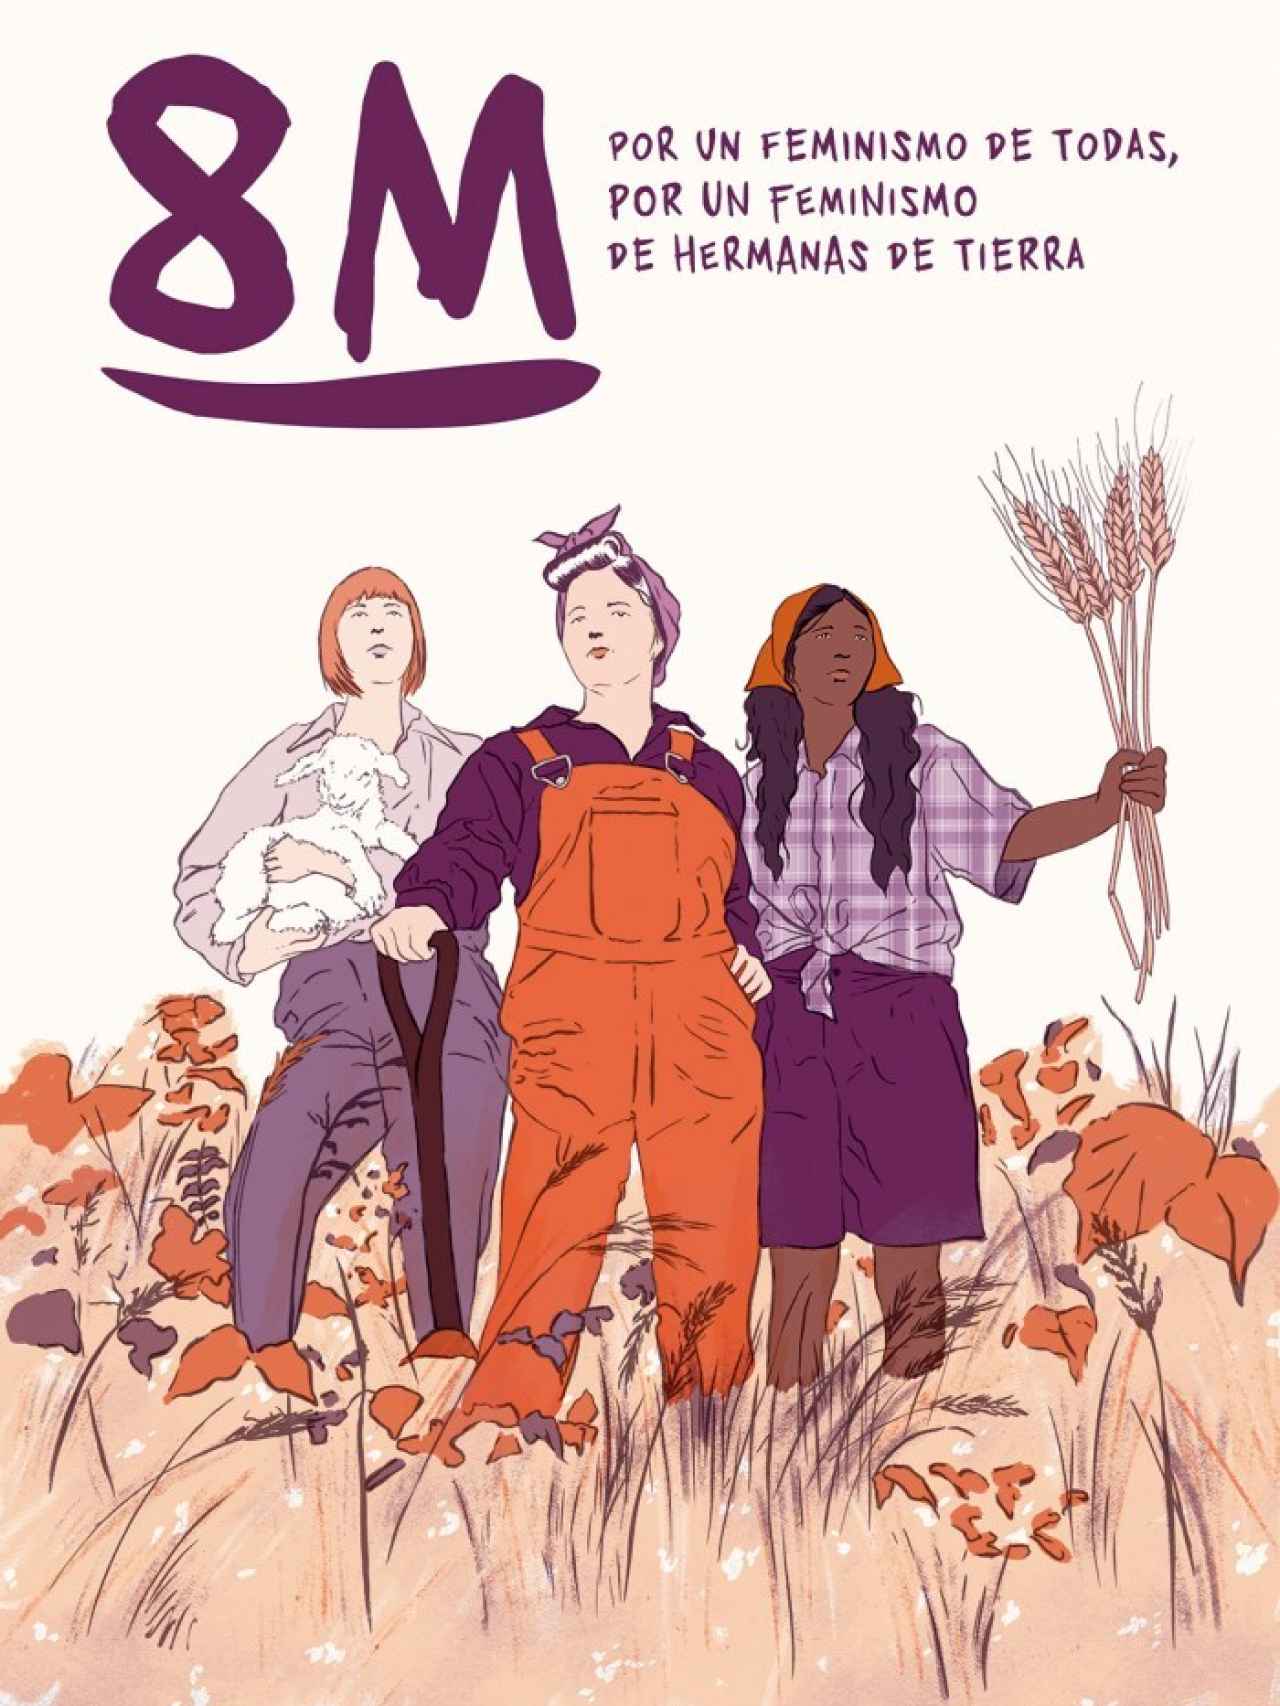 Cartel del manifiesto feminista 'Por un feminismo de hermanas de tierra'.